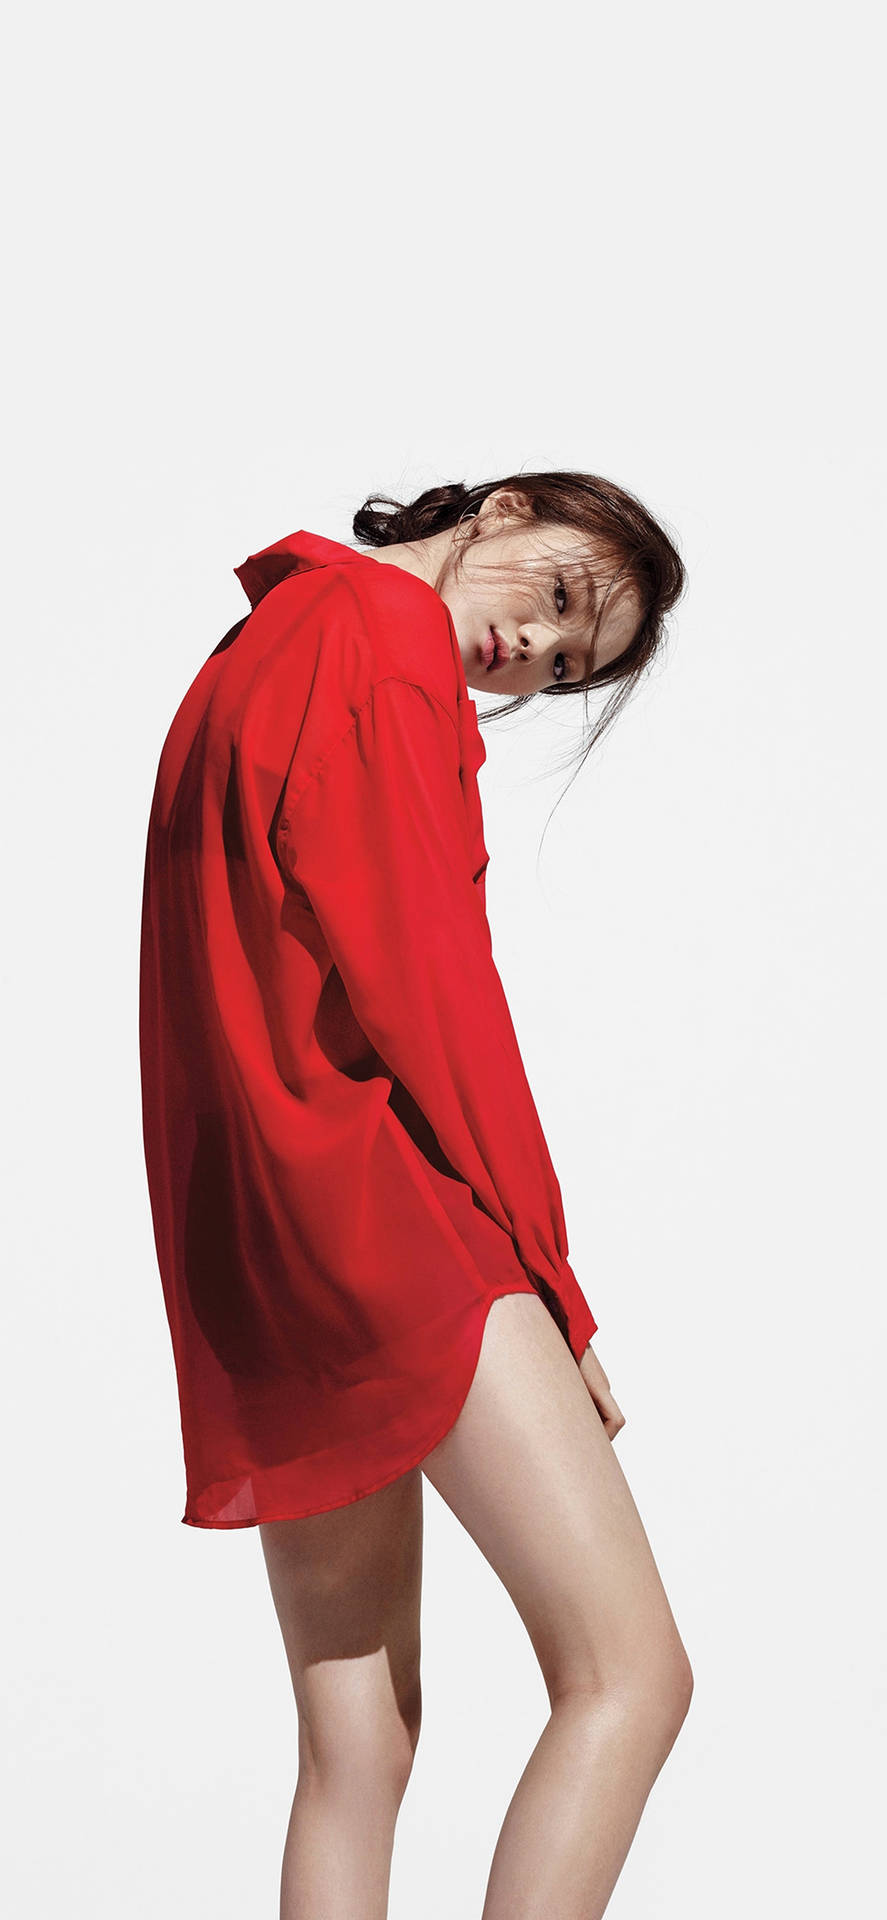 Koreanischesweibliches Model Lee Sung Kyung Für Das Magazin Marie Claire Korea Wallpaper